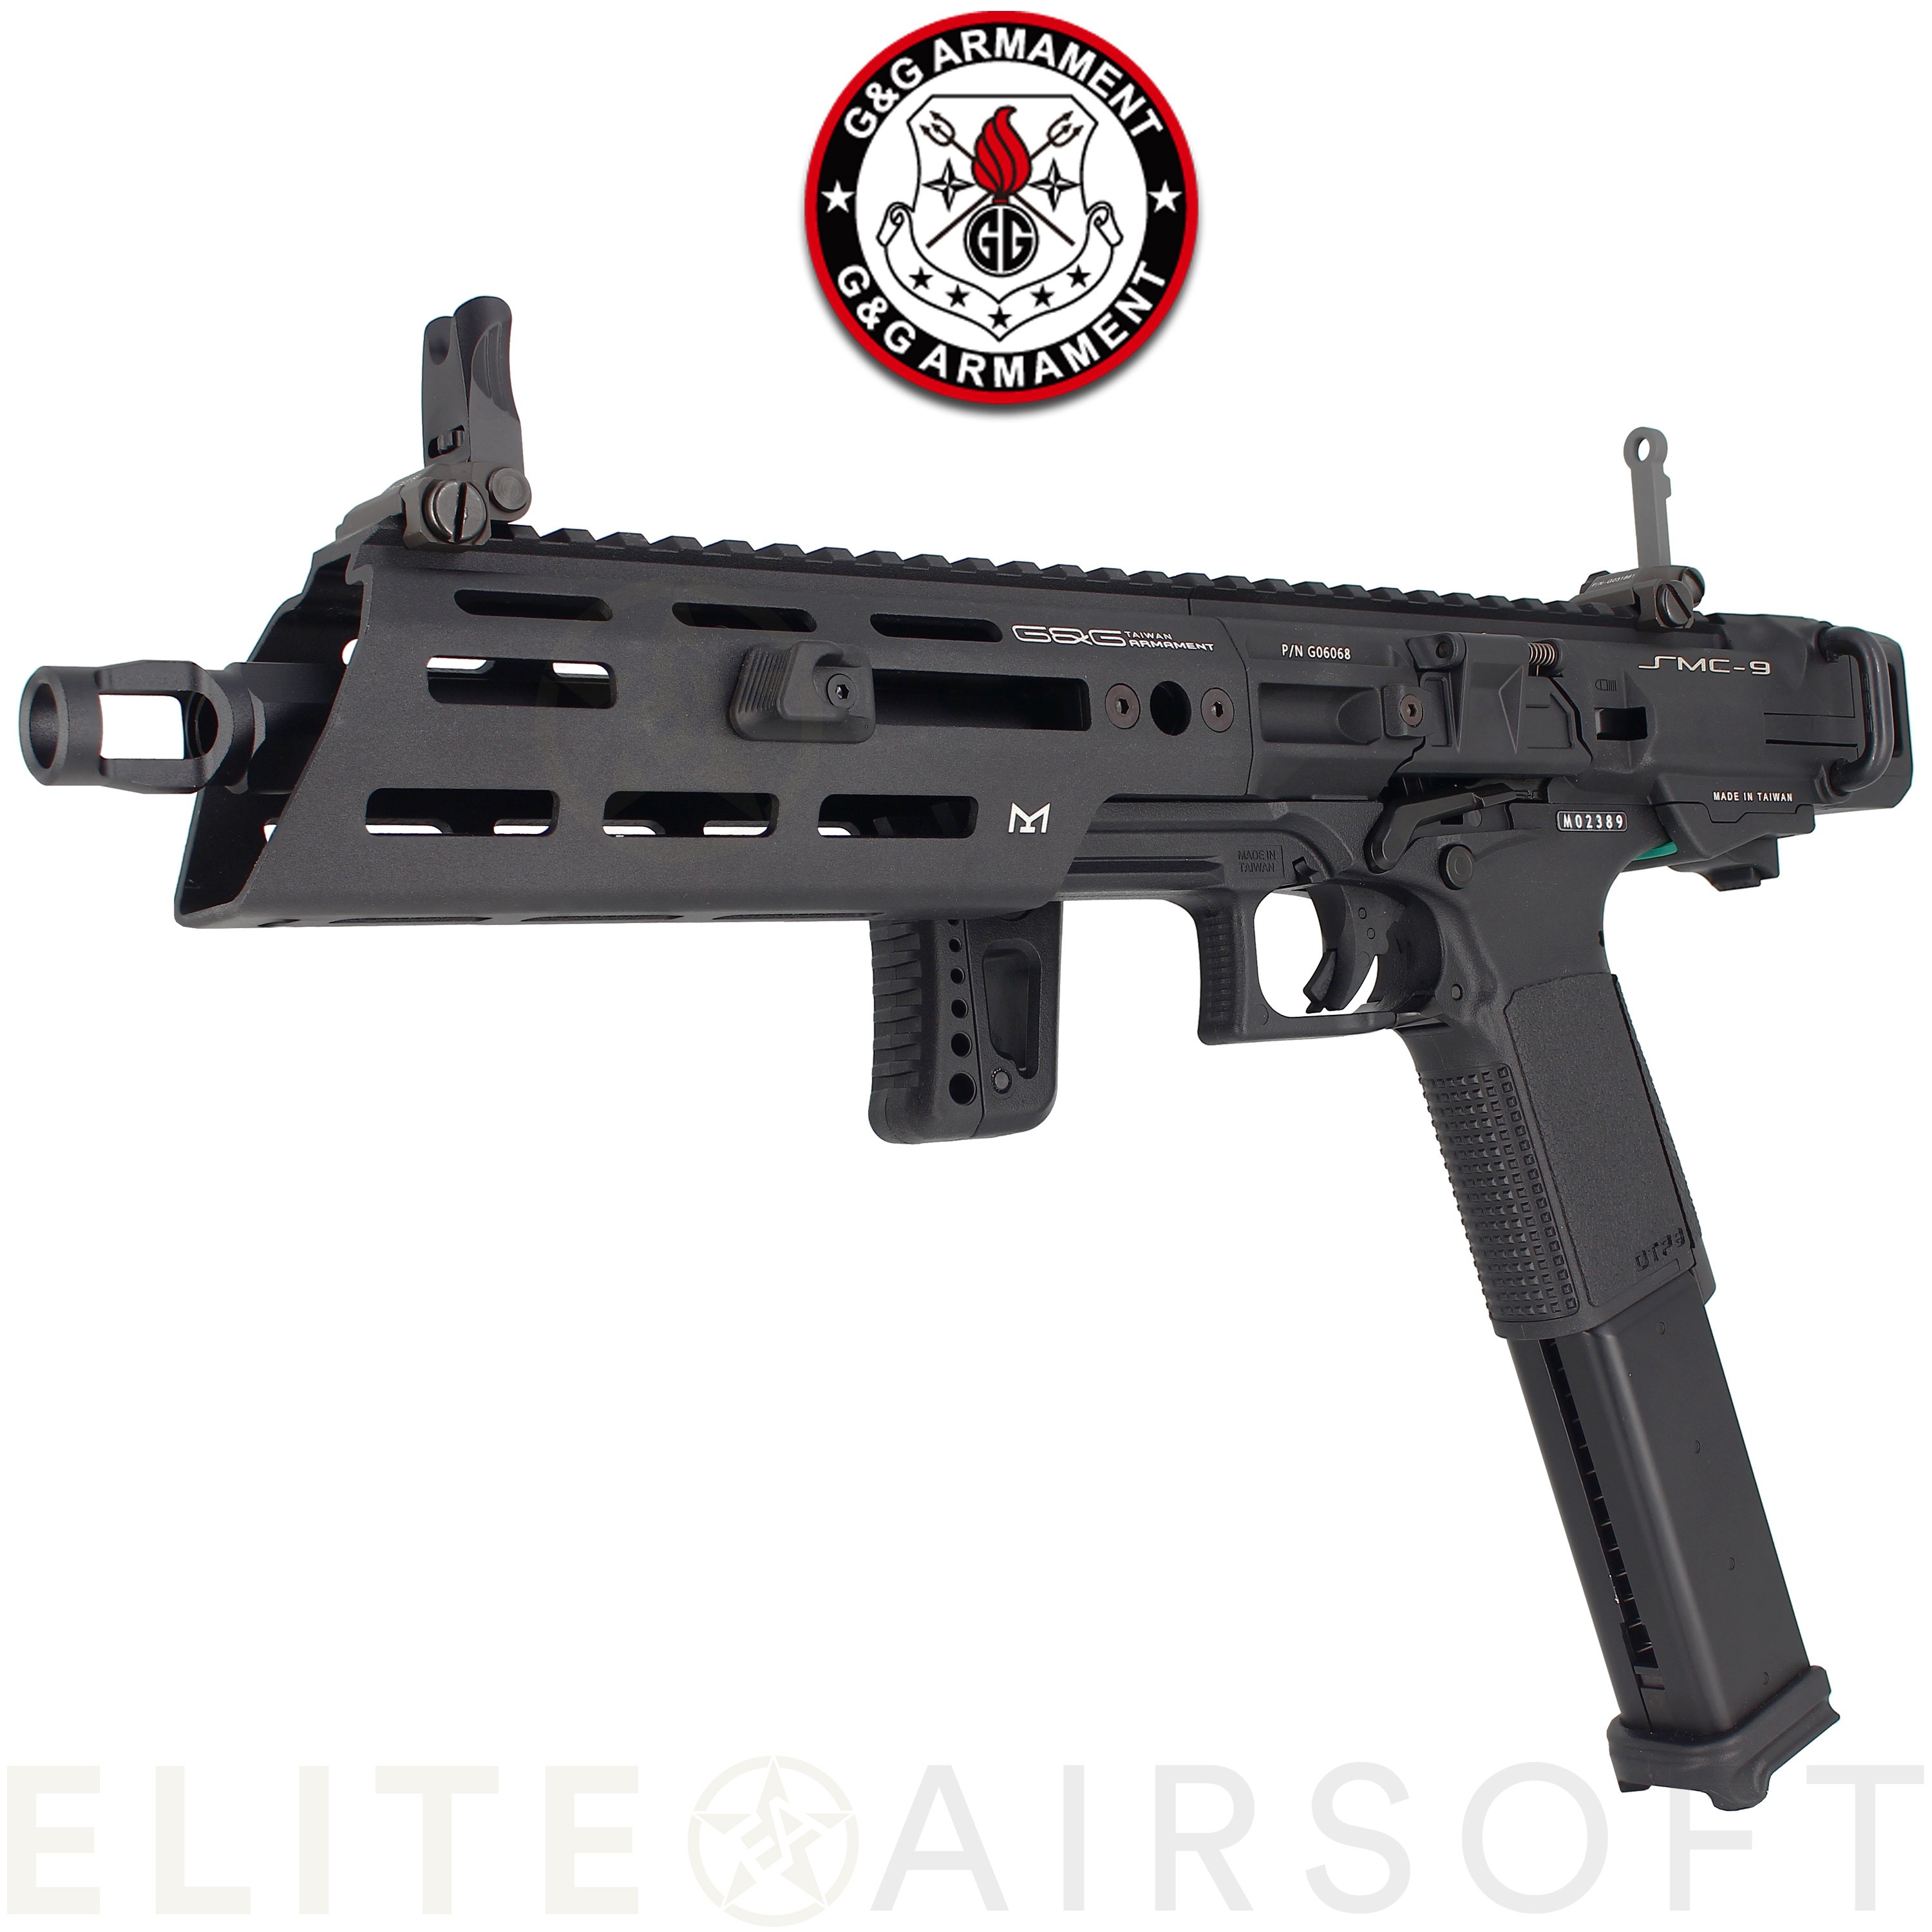 G&G - Pistolet mitrailleur SMC9 - GBBR - Gaz - Noir